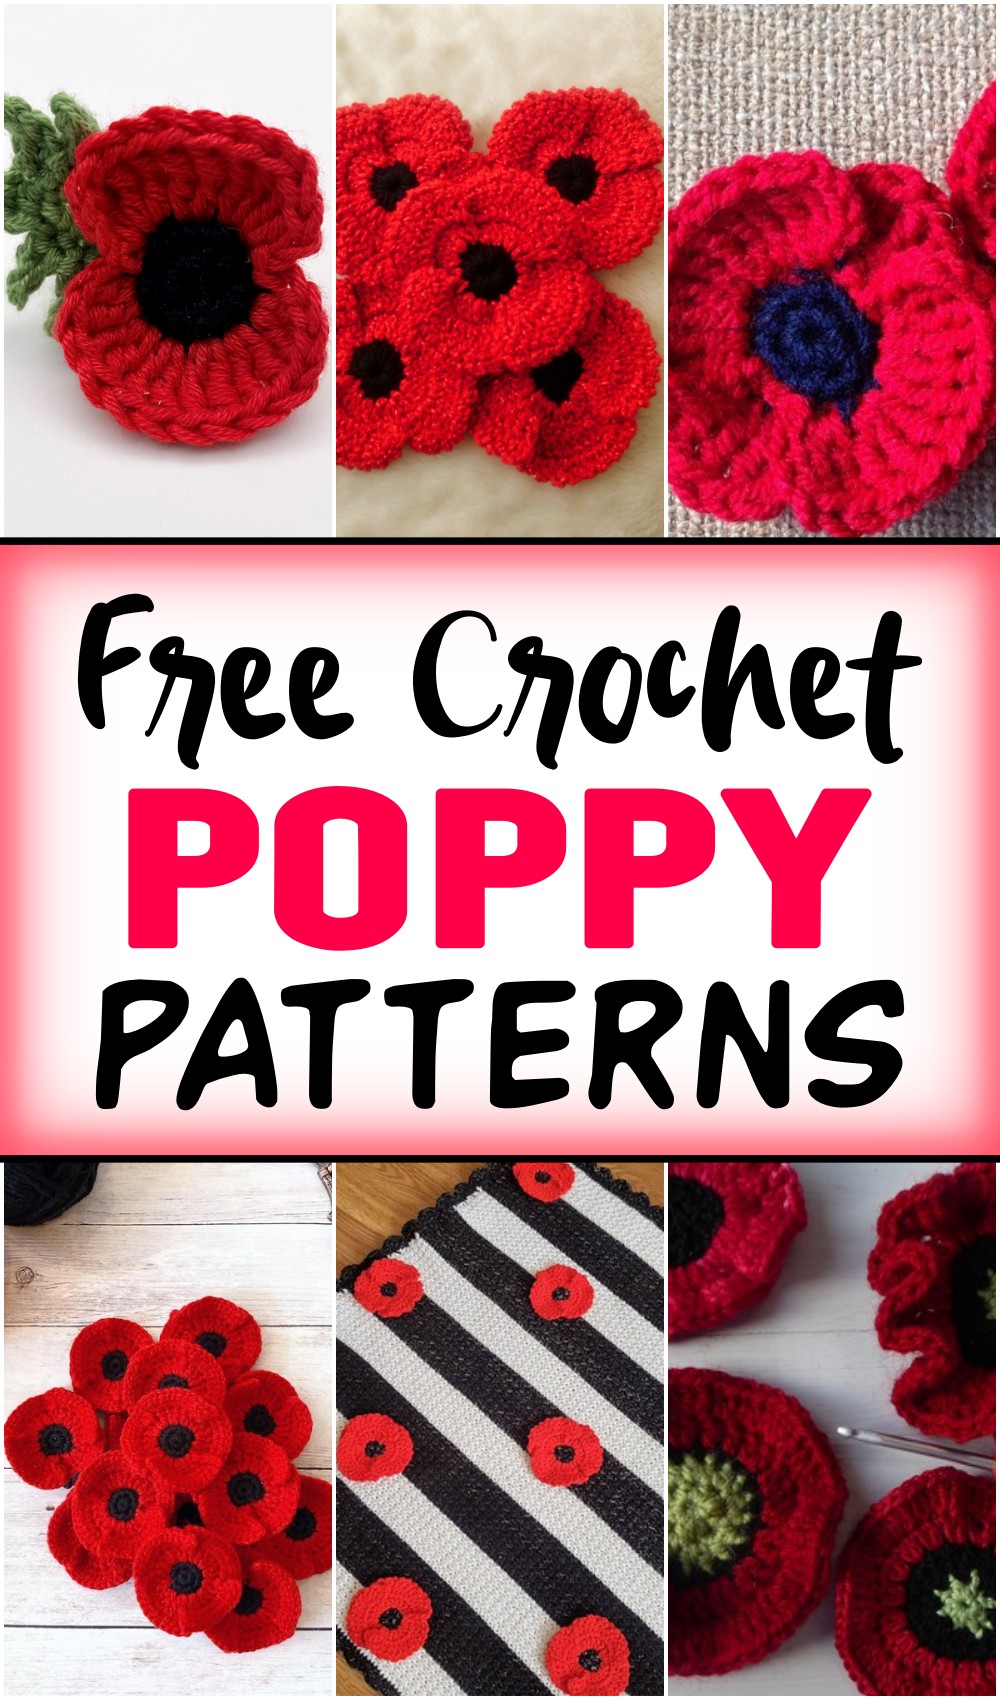 Free Crochet Poppy Patterns